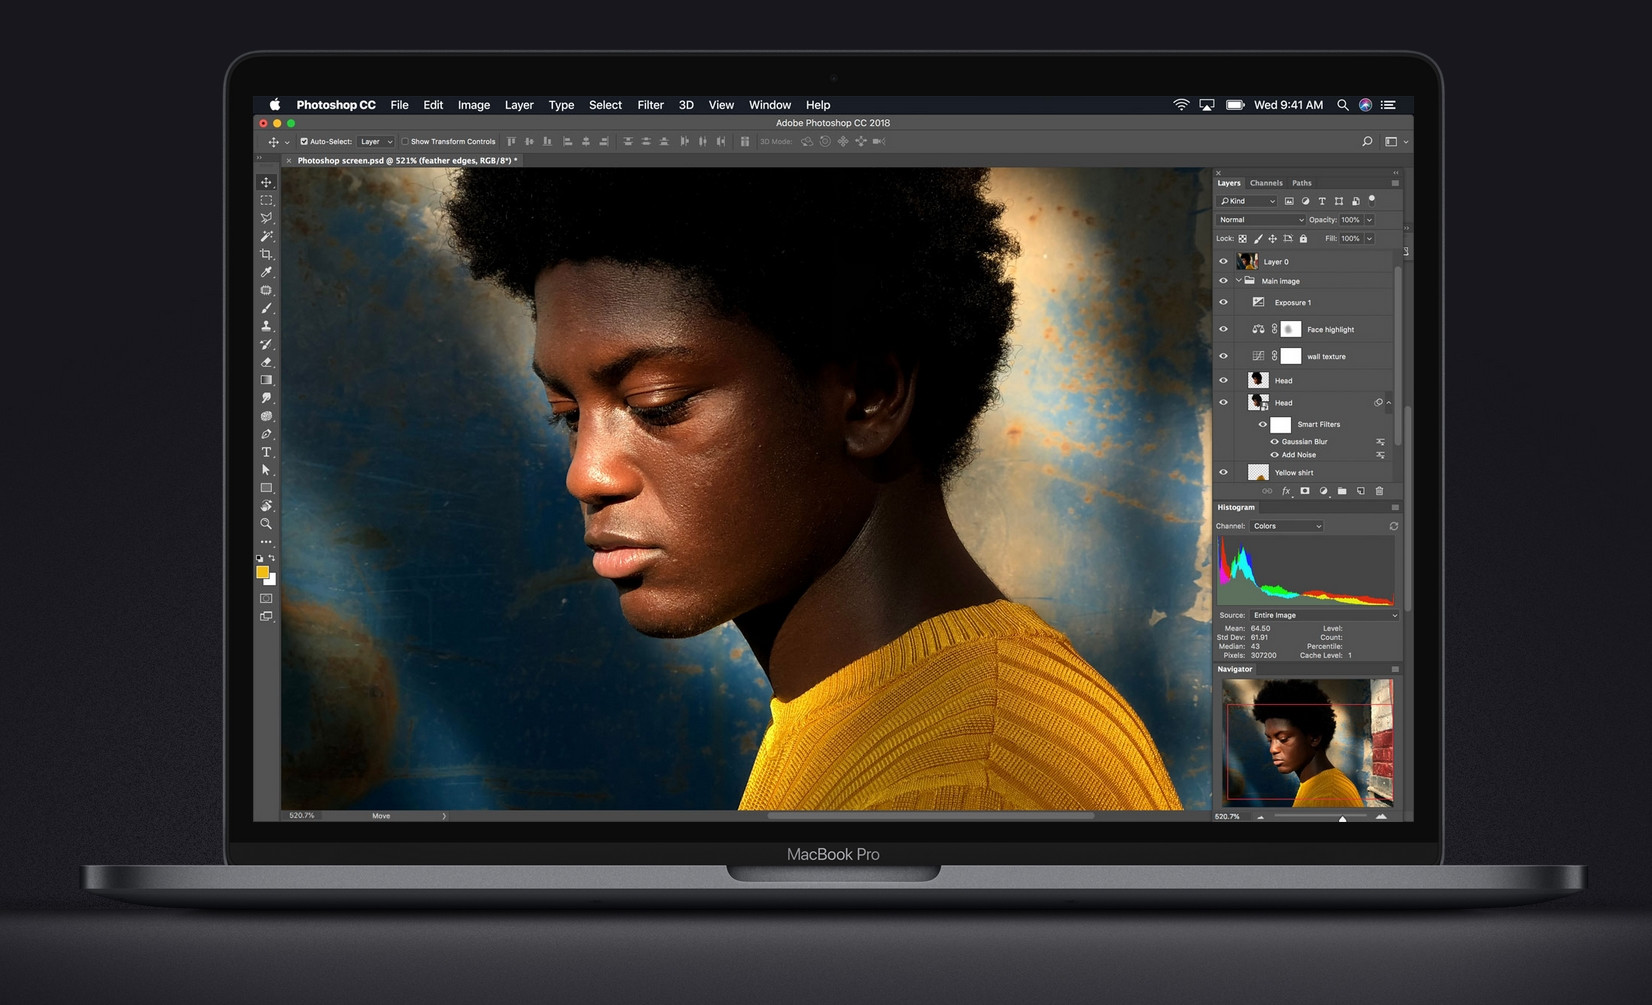 MacBook Pro artık 8 çekirdekli